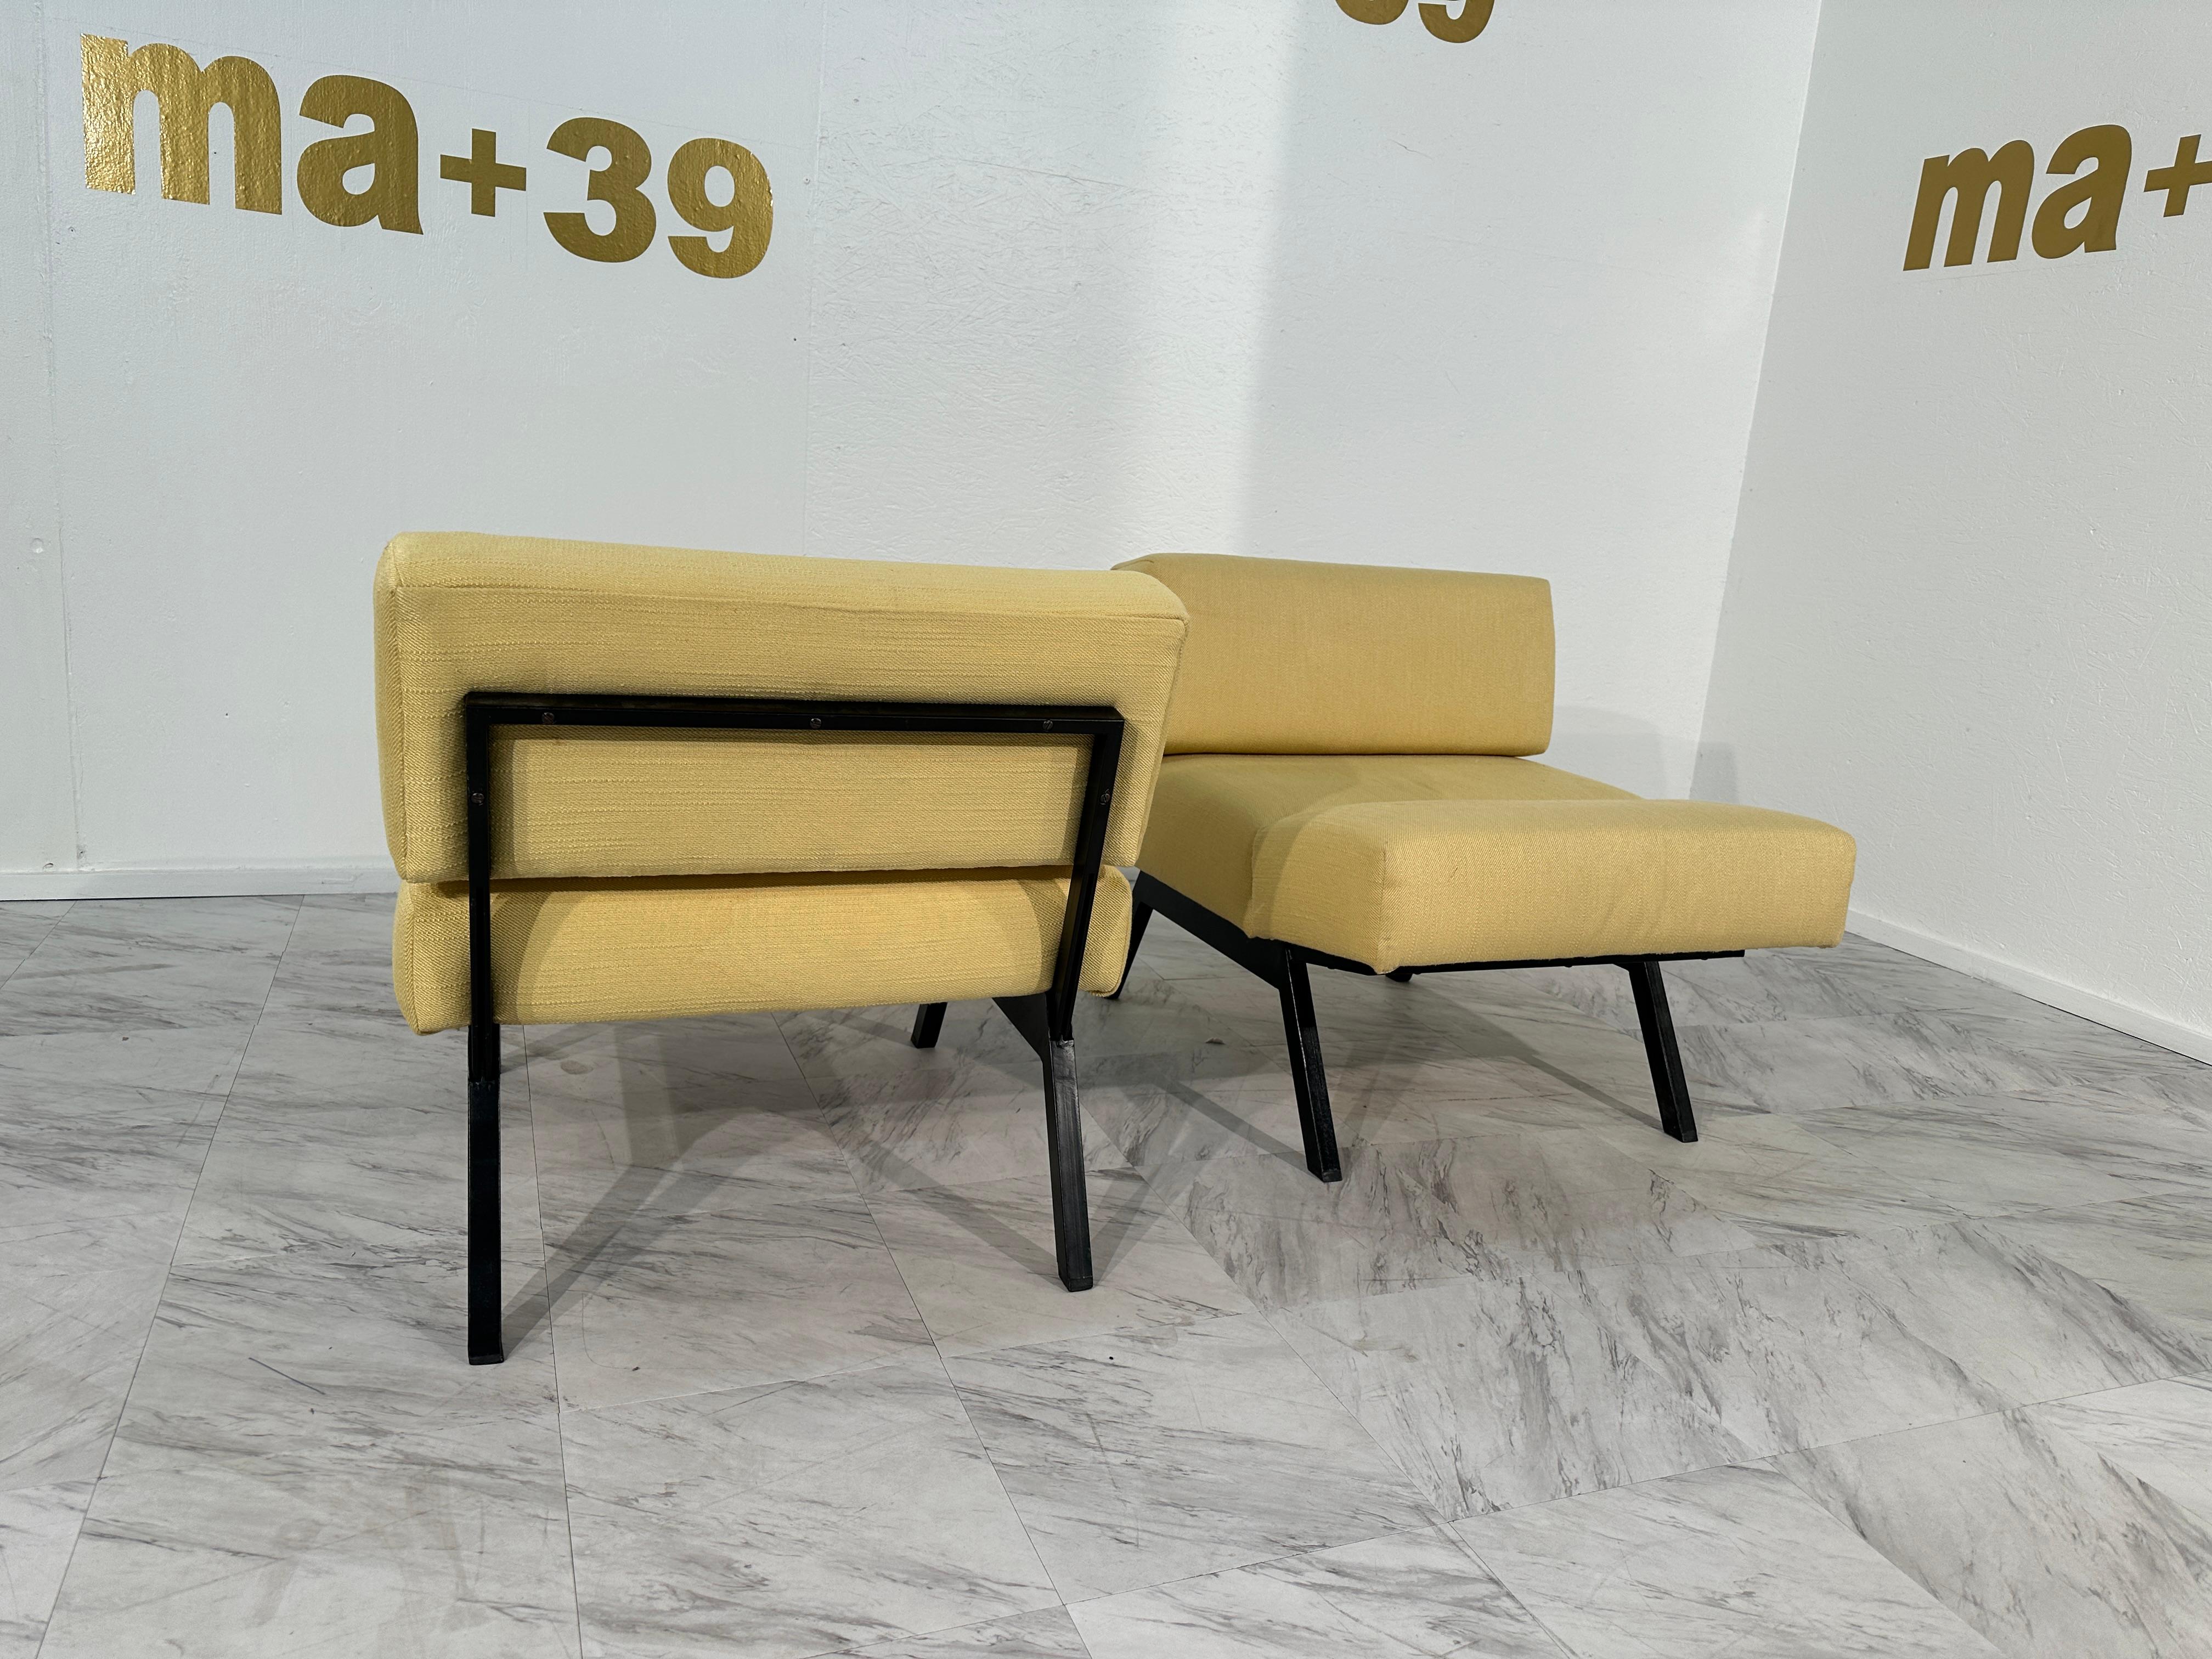 L'ensemble de 2 chaises longues Panchetto, conçu par Rito Valla pour IPE Bologna dans les années 1960, représente un mélange emblématique d'artisanat italien du milieu du siècle et de design innovant. Ces chaises de salon affichent une silhouette